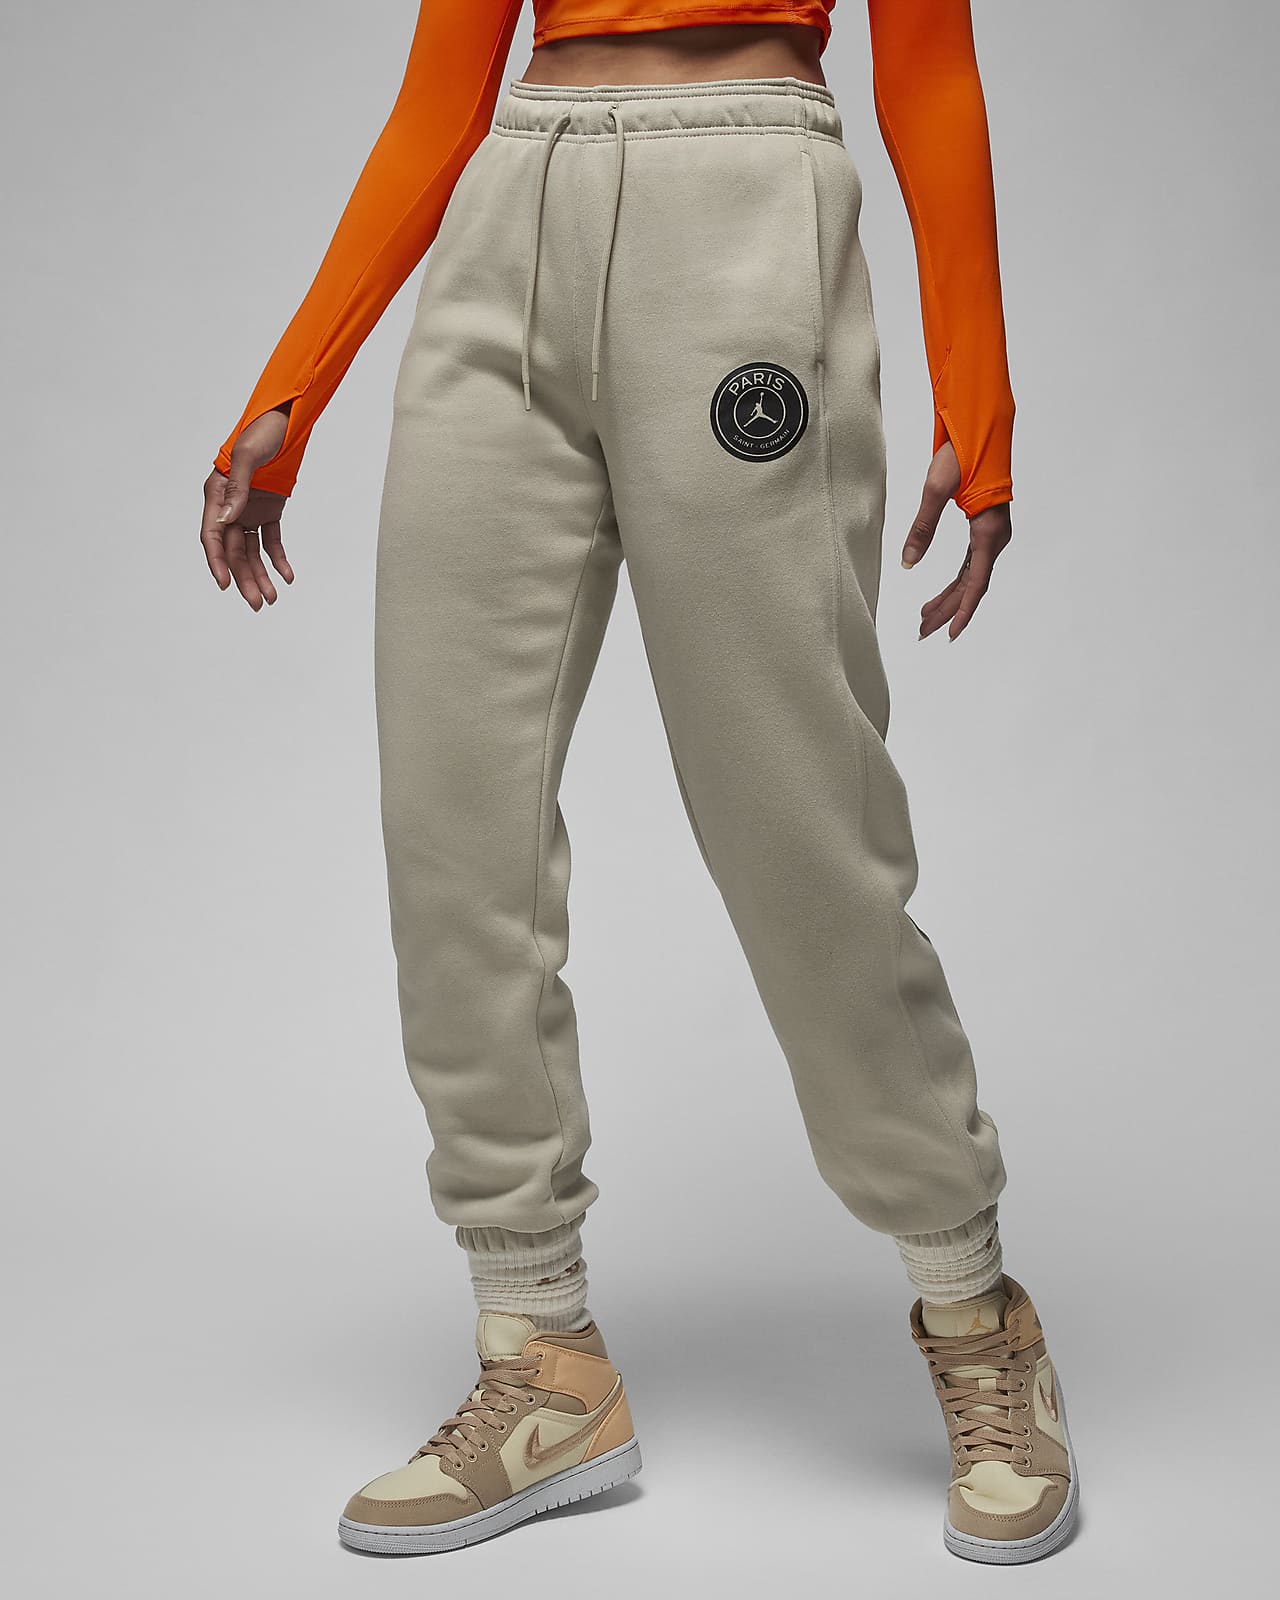 Pants de tejido Fleece Jordan del Paris Saint-Germain para mujer. Nike MX